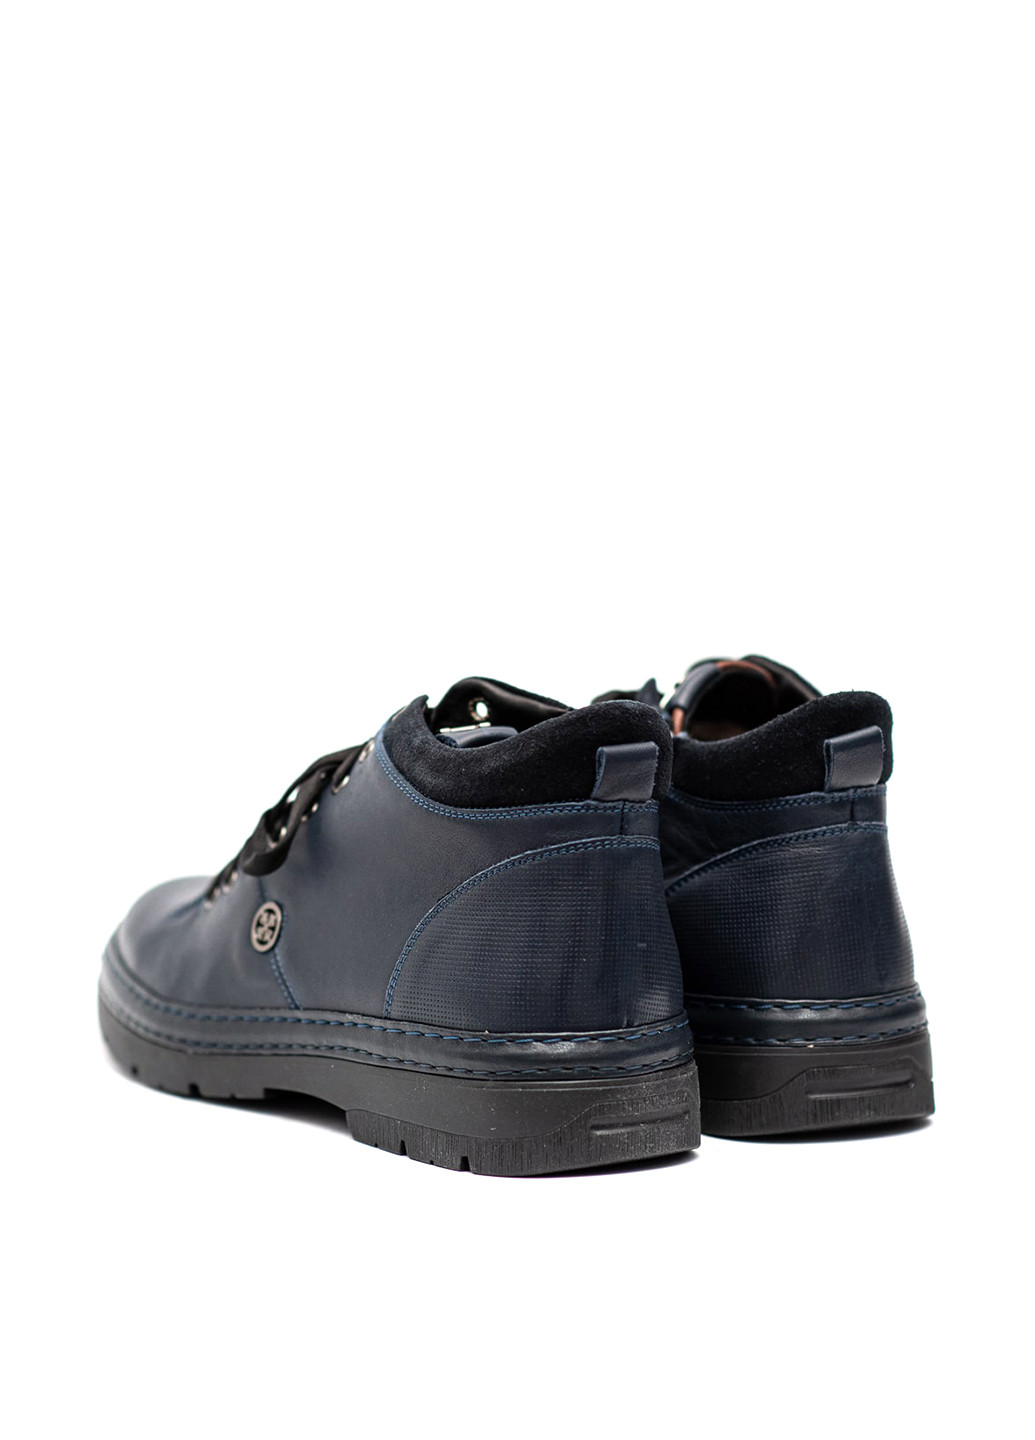 Синие зимние ботинки Corso Vito